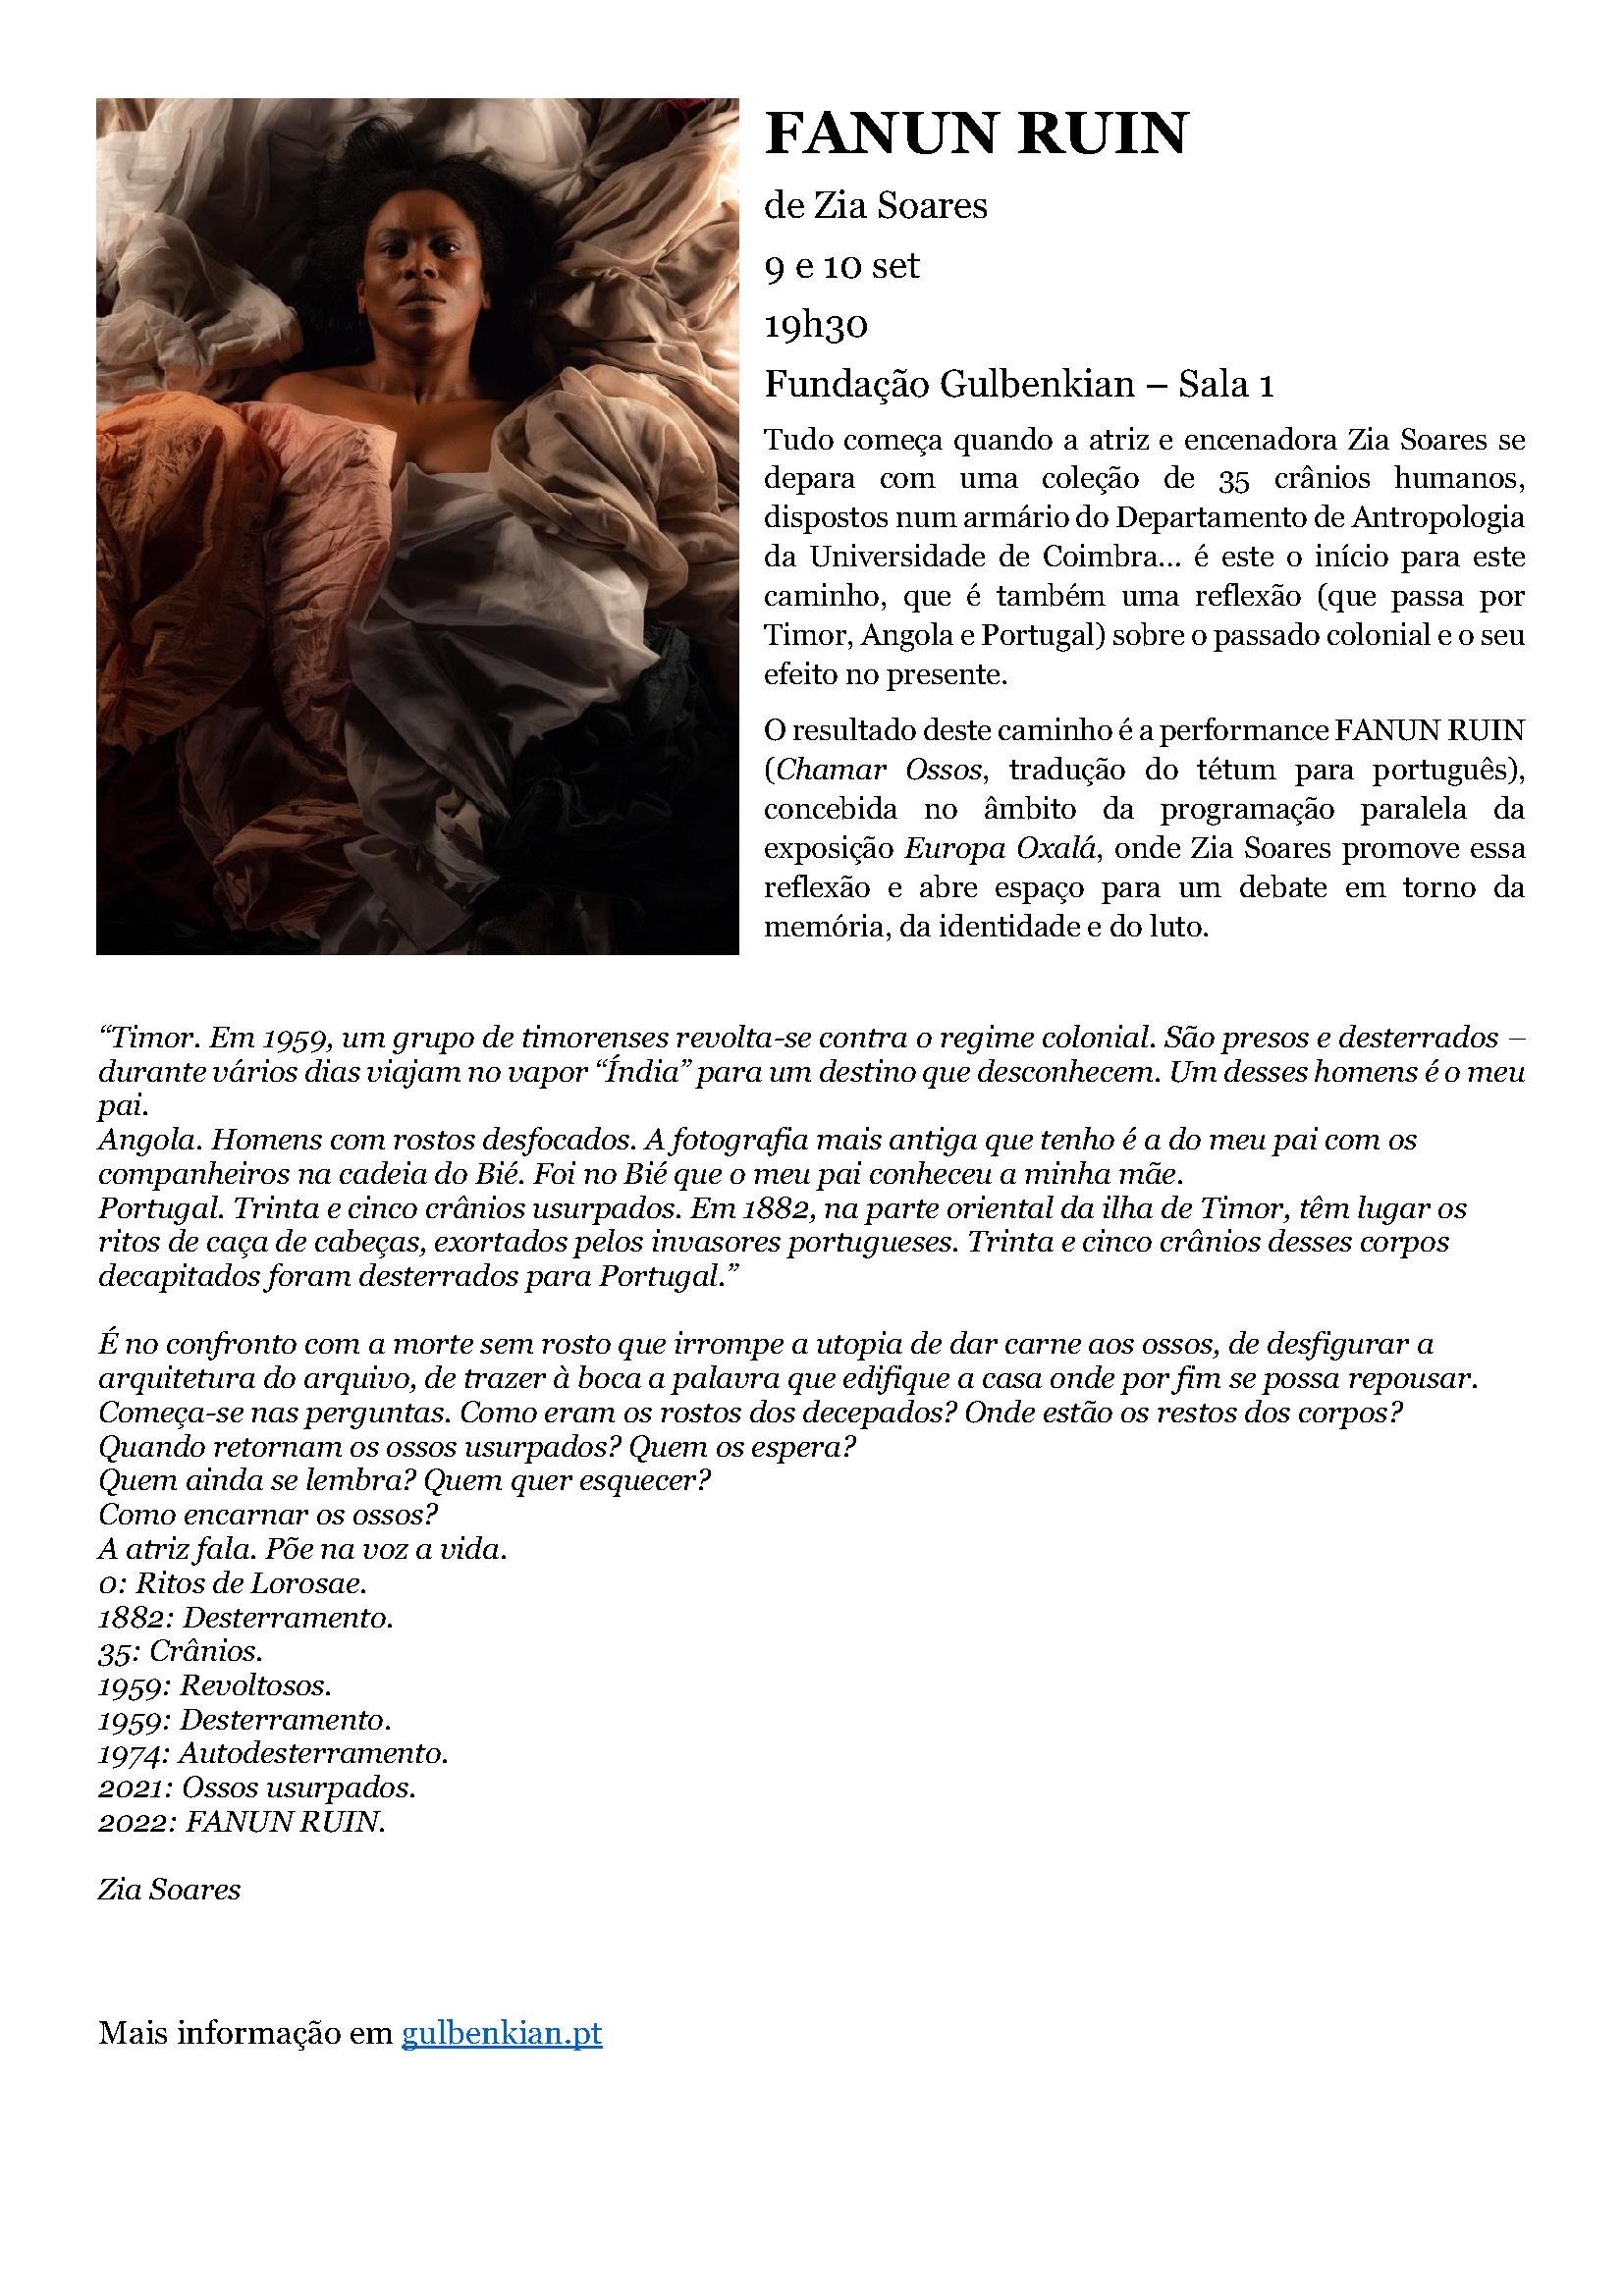 Serviço de Comunicação / Fundação Calouste Gulbenkian